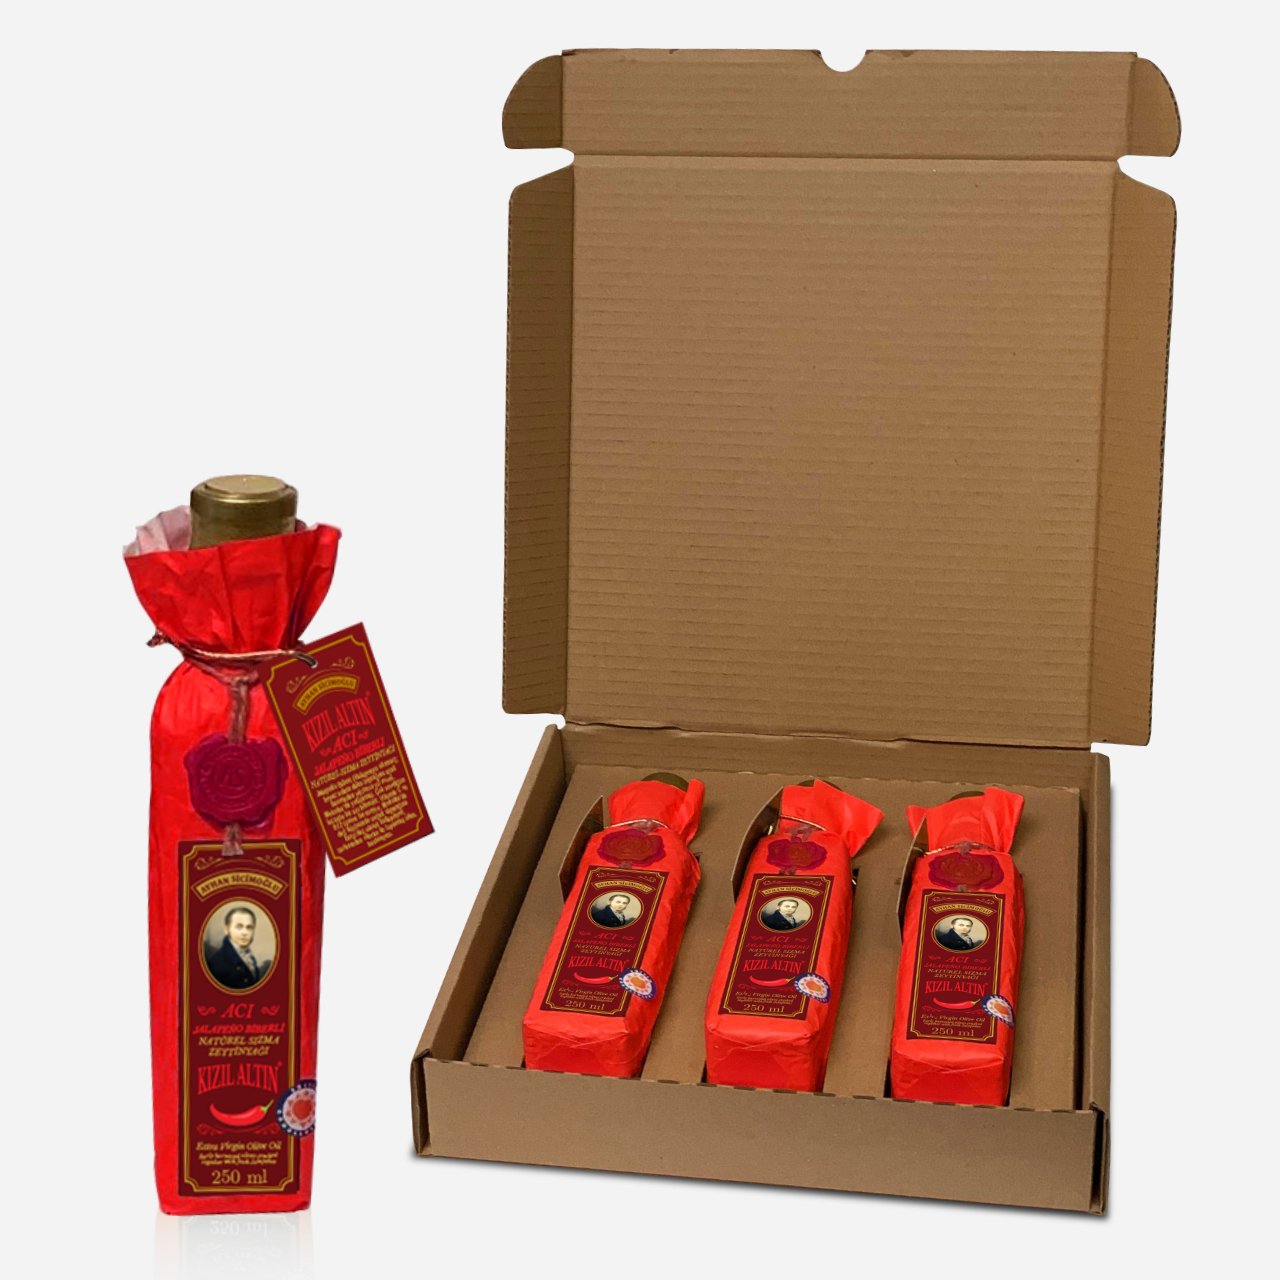 Kızıl Altın Serisi 3'lü 250 ml Acı Jalapeño Biberli Natürel Sızma Zeytinyağı (Kargo Dahil)